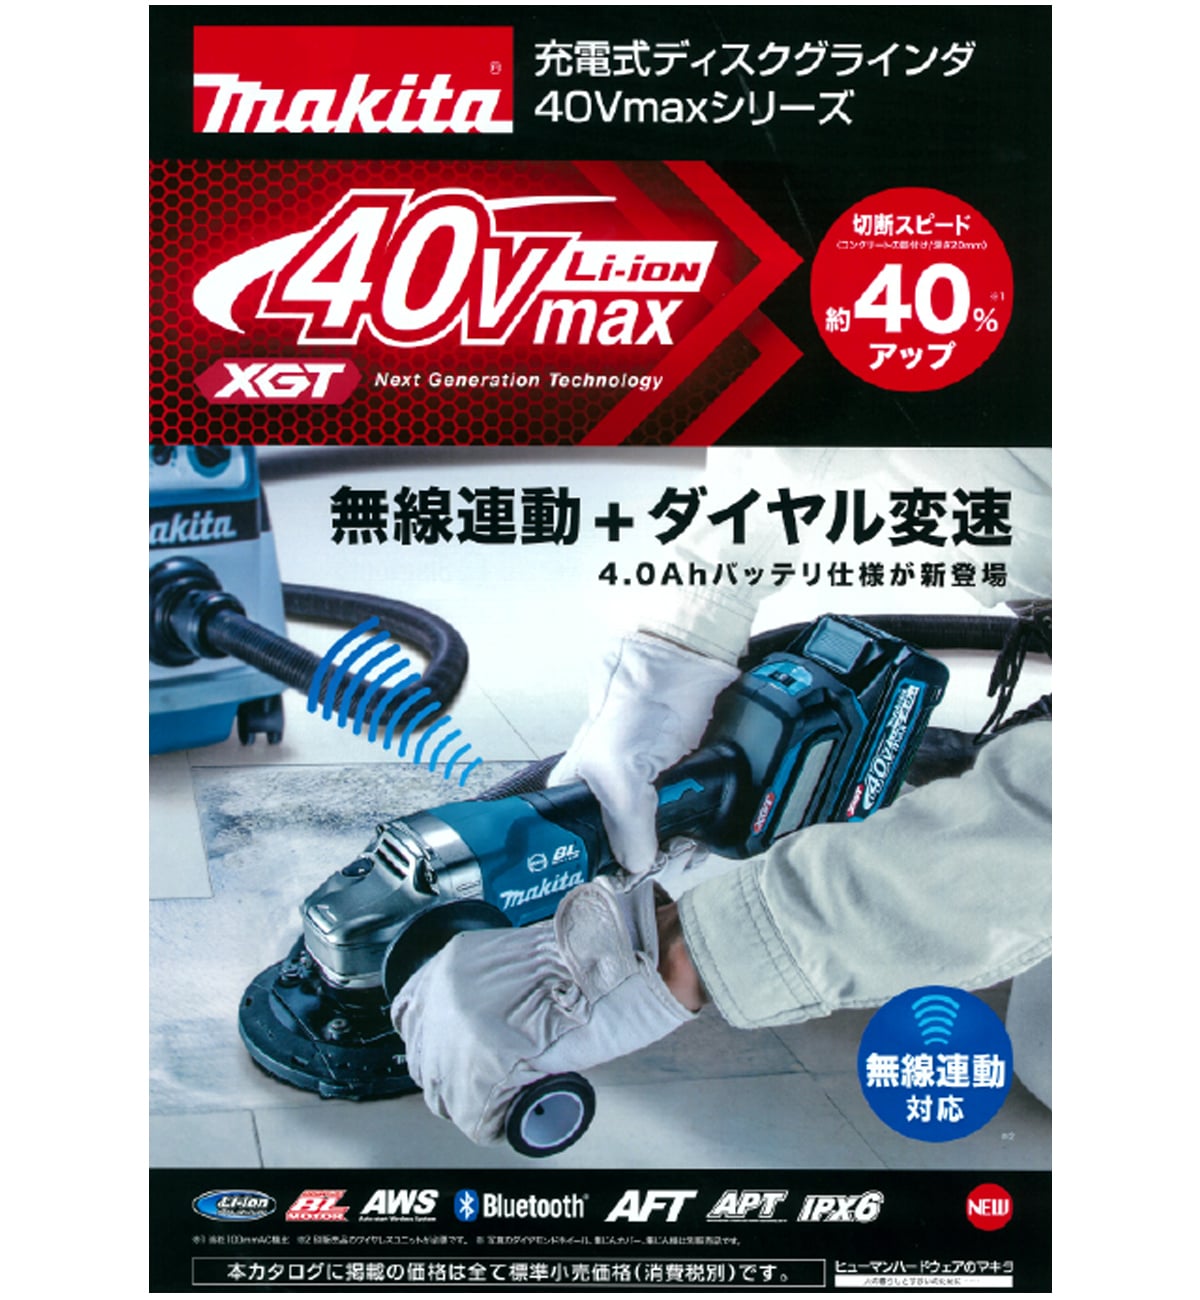 マキタ GA017GRMX 40Vmax充電式ディスクグラインダ100mm ウエダ金物